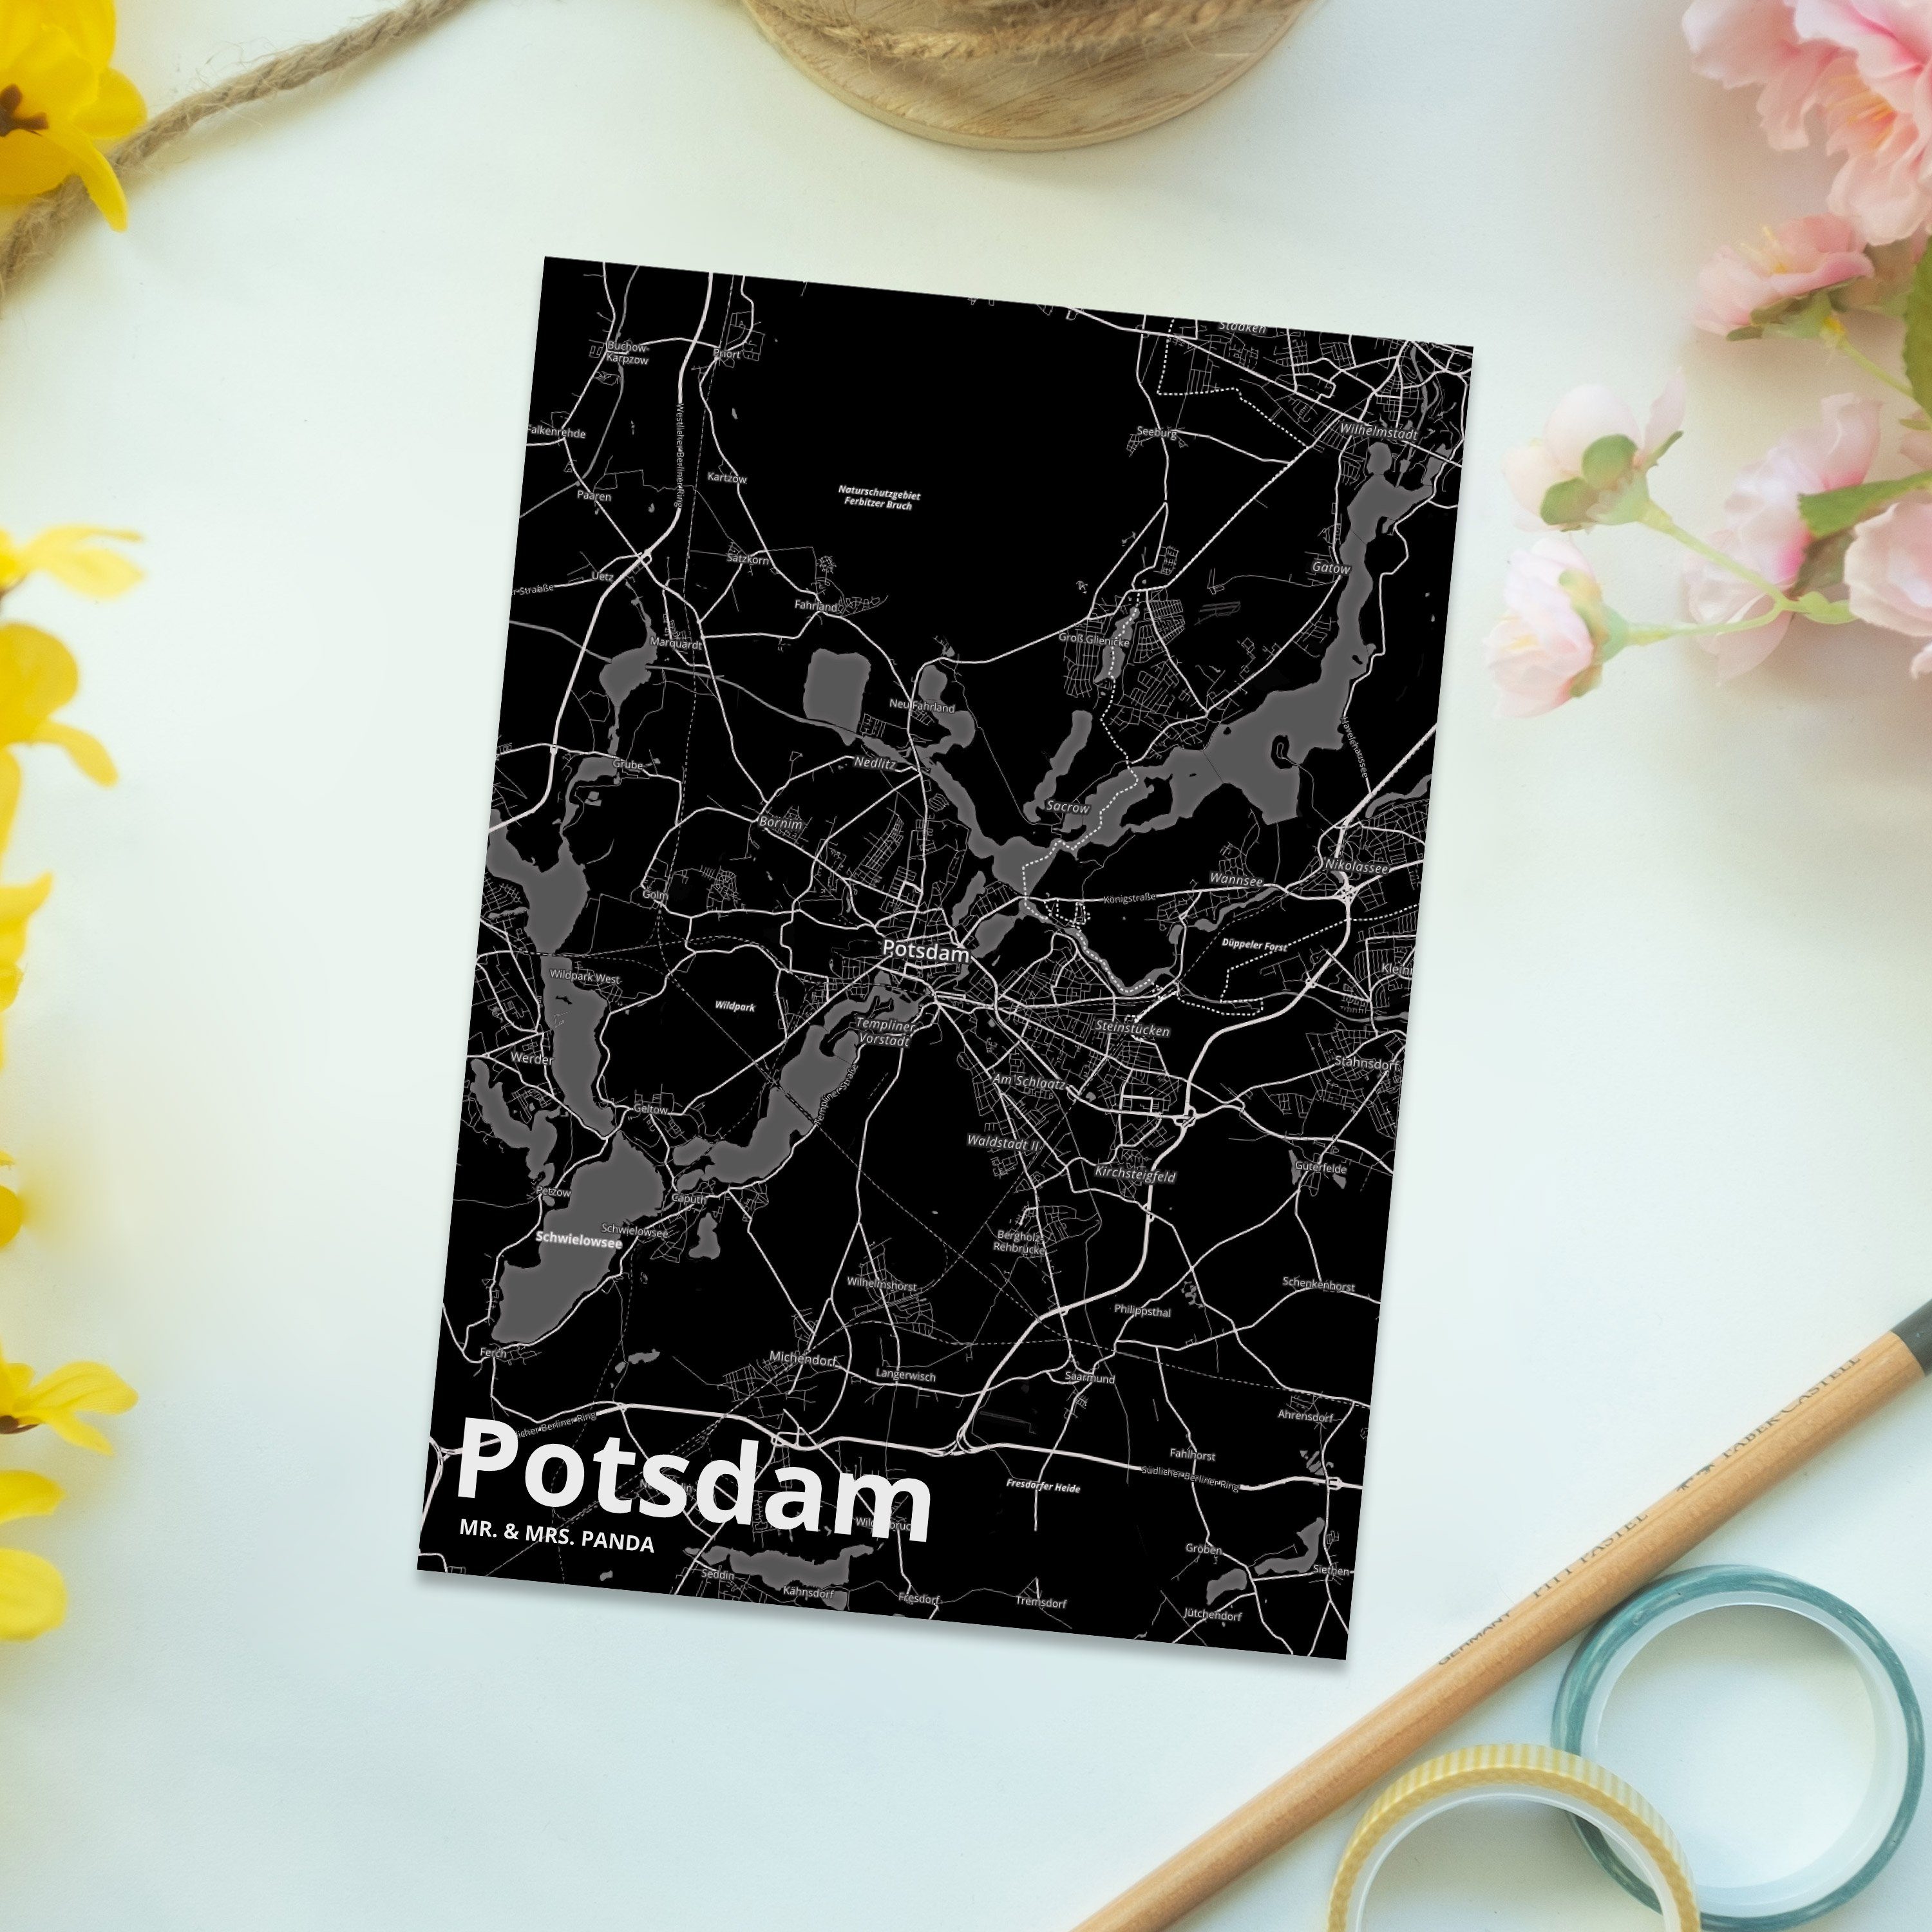 Panda Dorf & Geschenk, Mr. Postkarte Städte, Mrs. Landkarte Map - Karte Stadt Potsdam Stadtplan